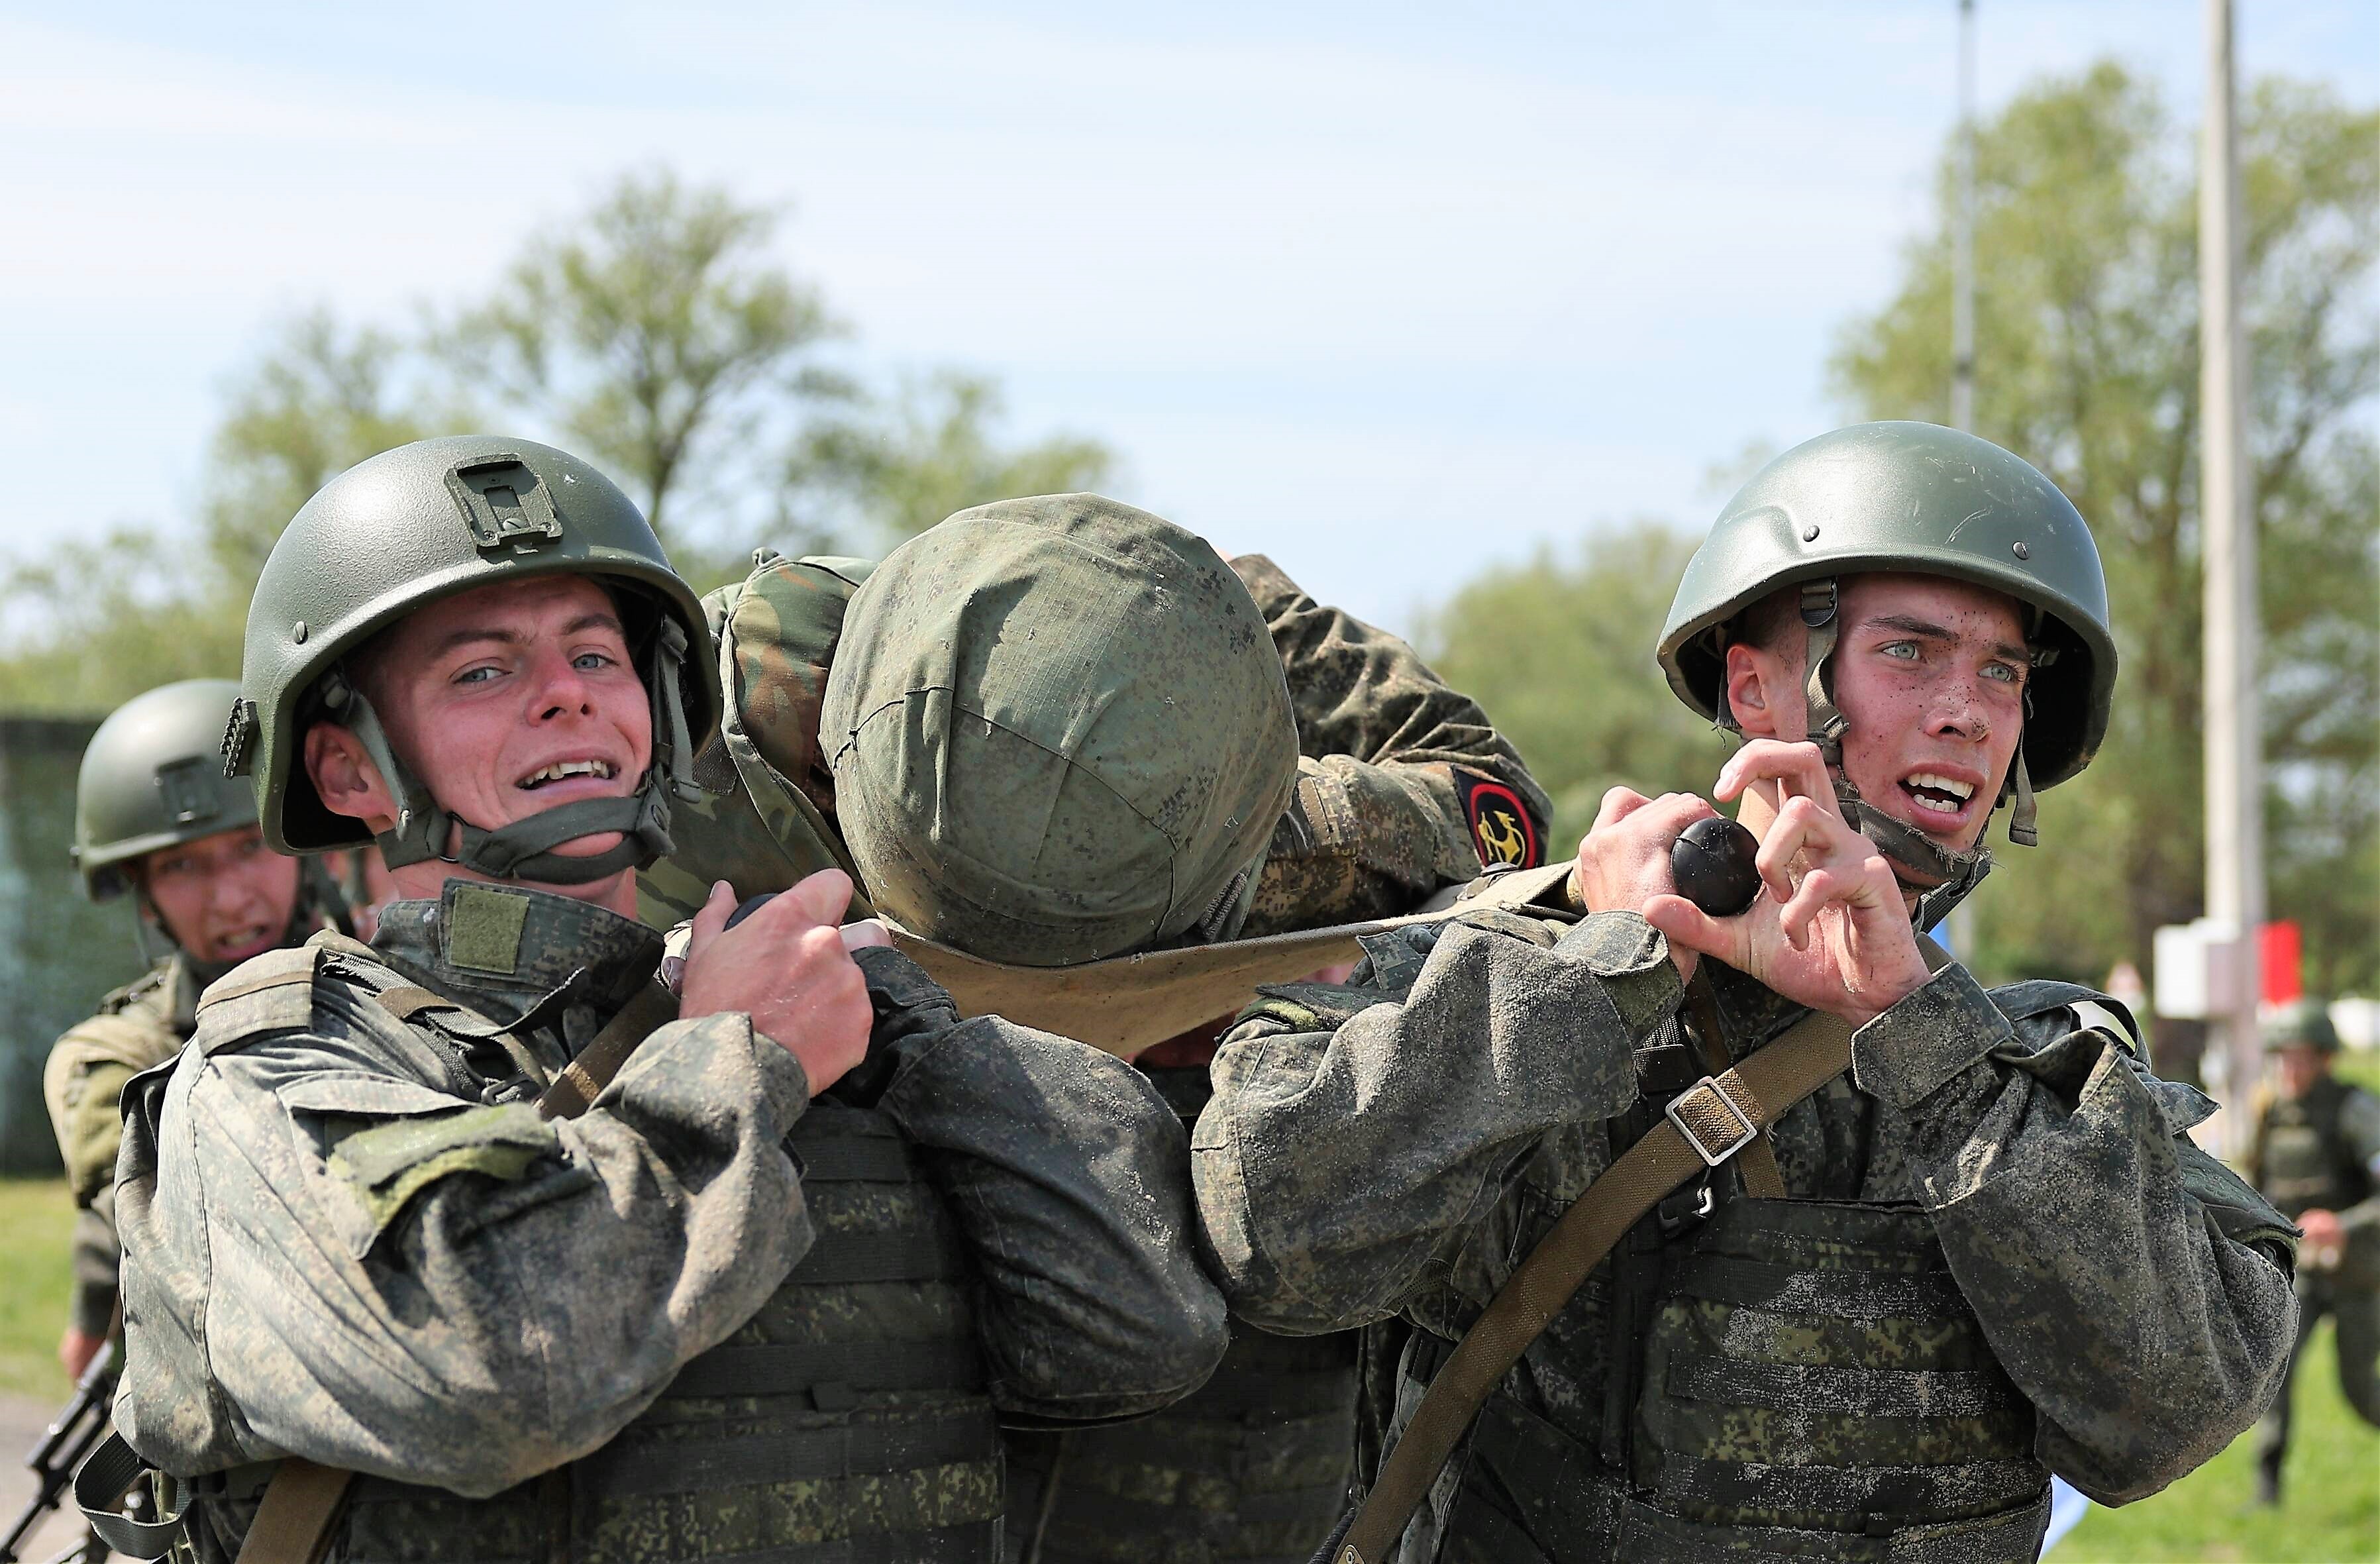 Komplette russische 72. Brigade vernichtet! Putin im Schock - Blutige Kämpfe im Süden der Ukraine ausgelöscht